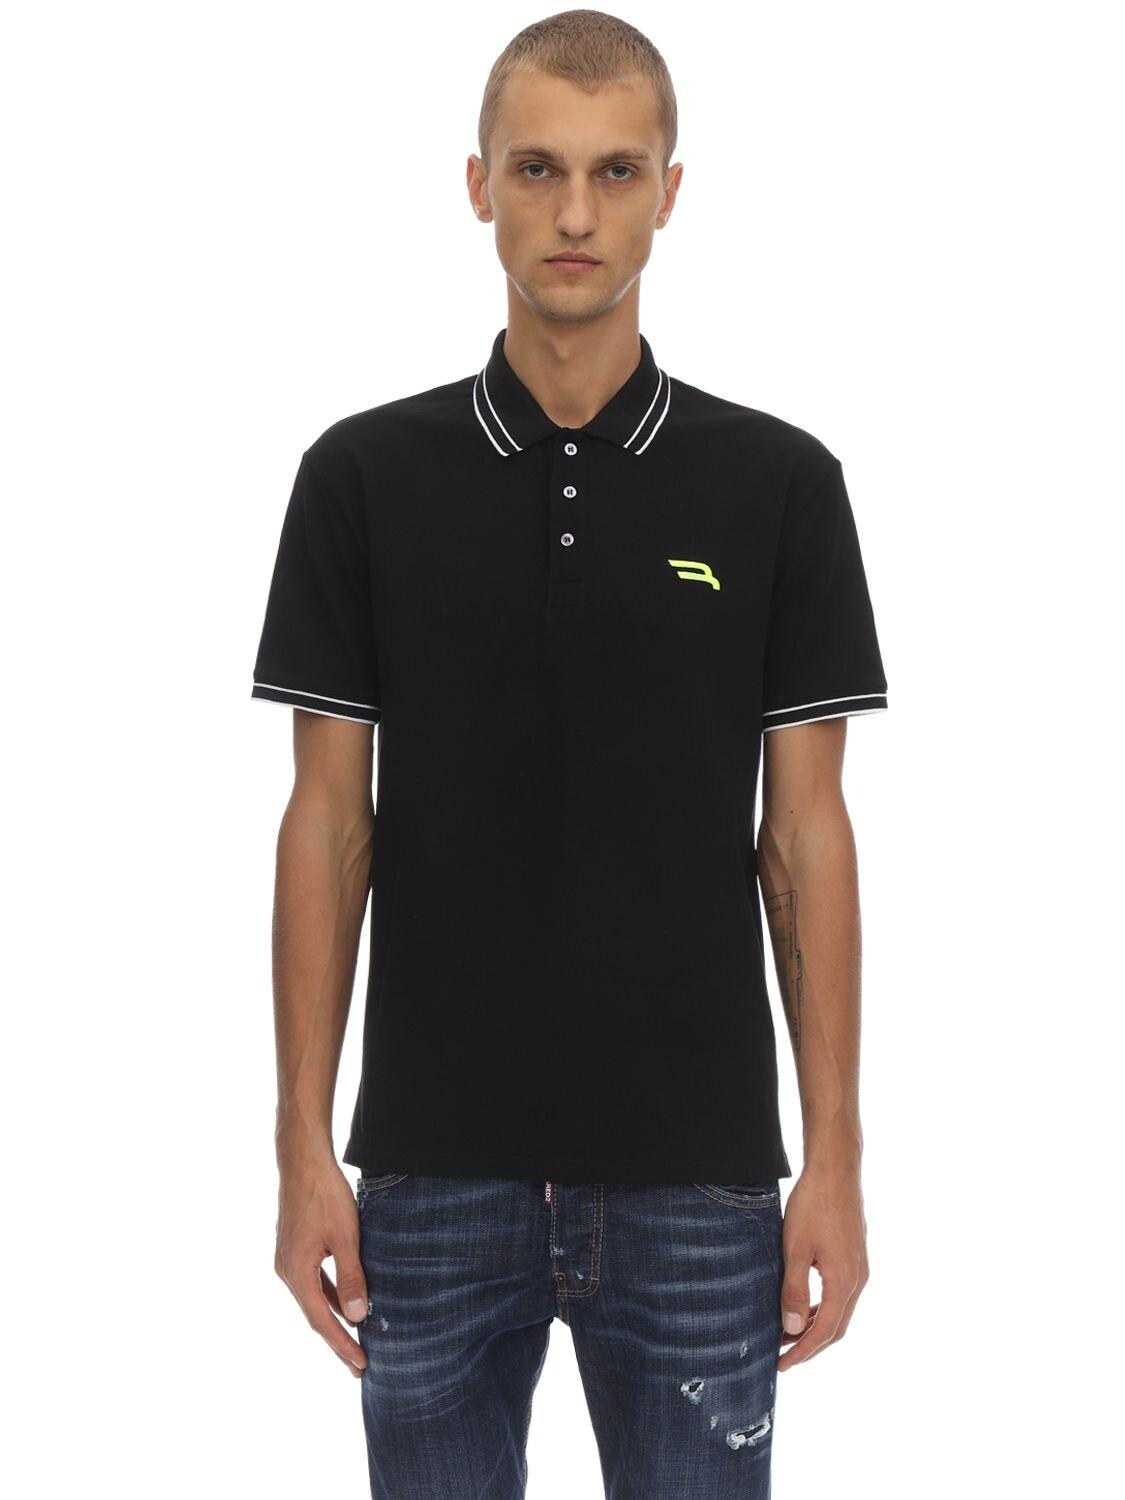 Bally Cotton Piqué Polo Shirt in Black for Men - Save 29% - Lyst